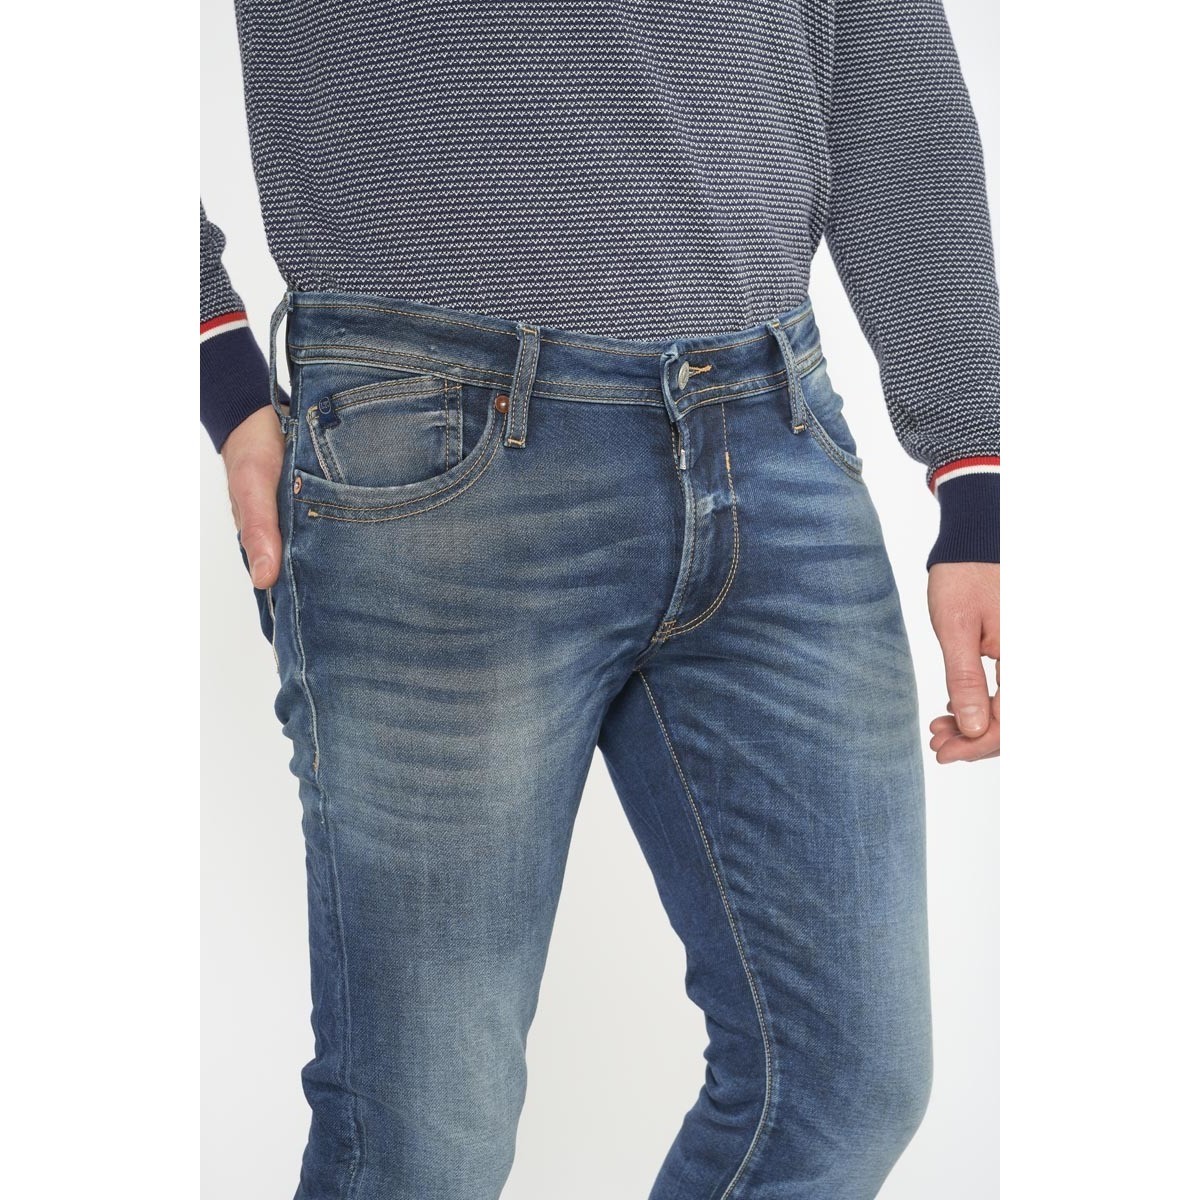 Le Temps des Cerises Bleu Jogg 700/11 adjusted jeans bleu 2n3lt02T